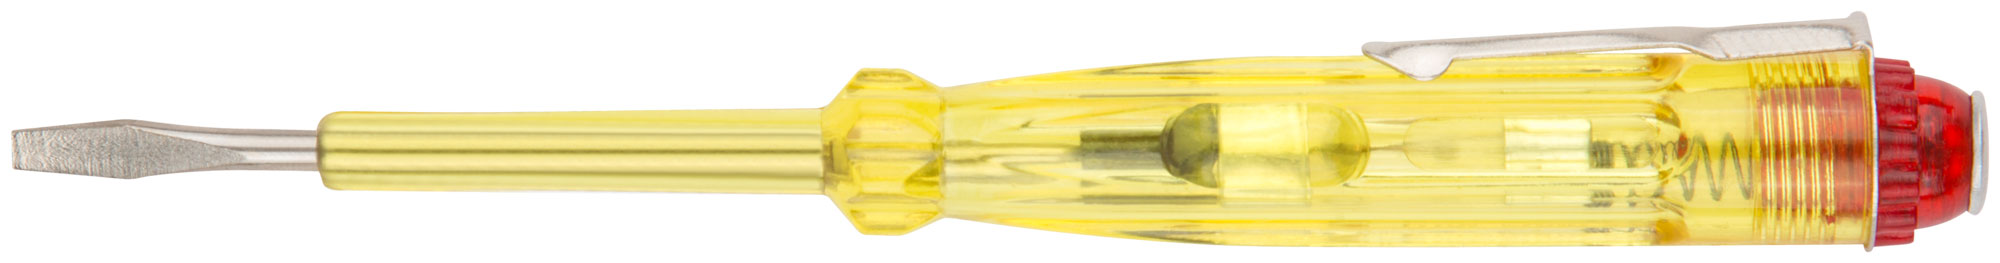 Отвертка индикаторная, желтая ручка 100 - 500 В, 140 мм КУРС 56501 отвертка индикаторная курс 56502 желтая ручка 100 500 в 190 мм